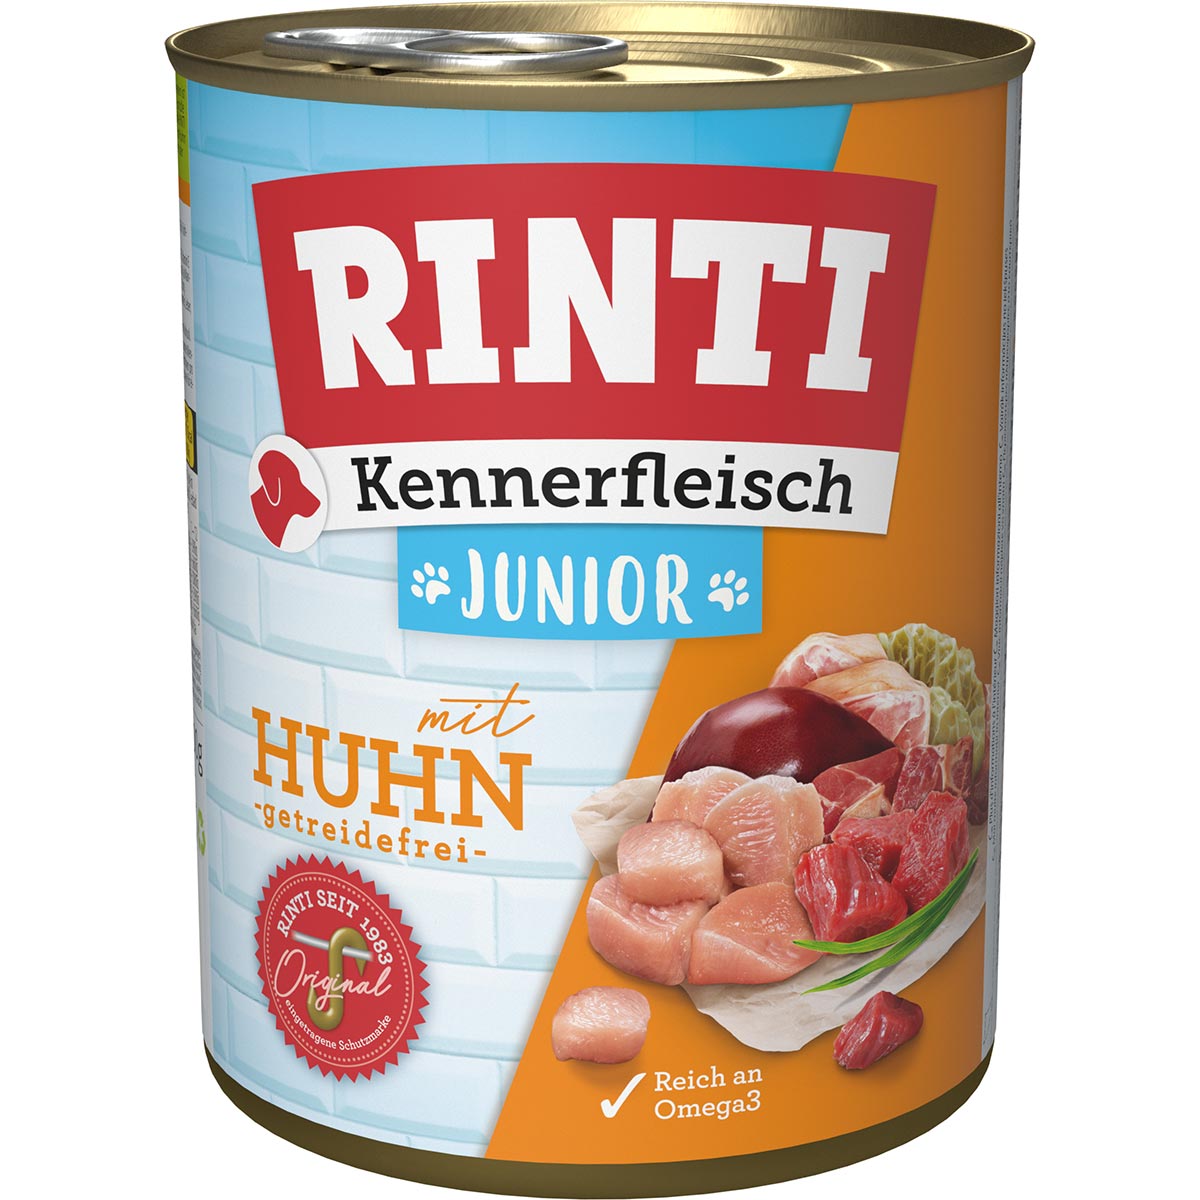 Rinti Kennerfleisch Junior mit Huhn 12x800g von Rinti